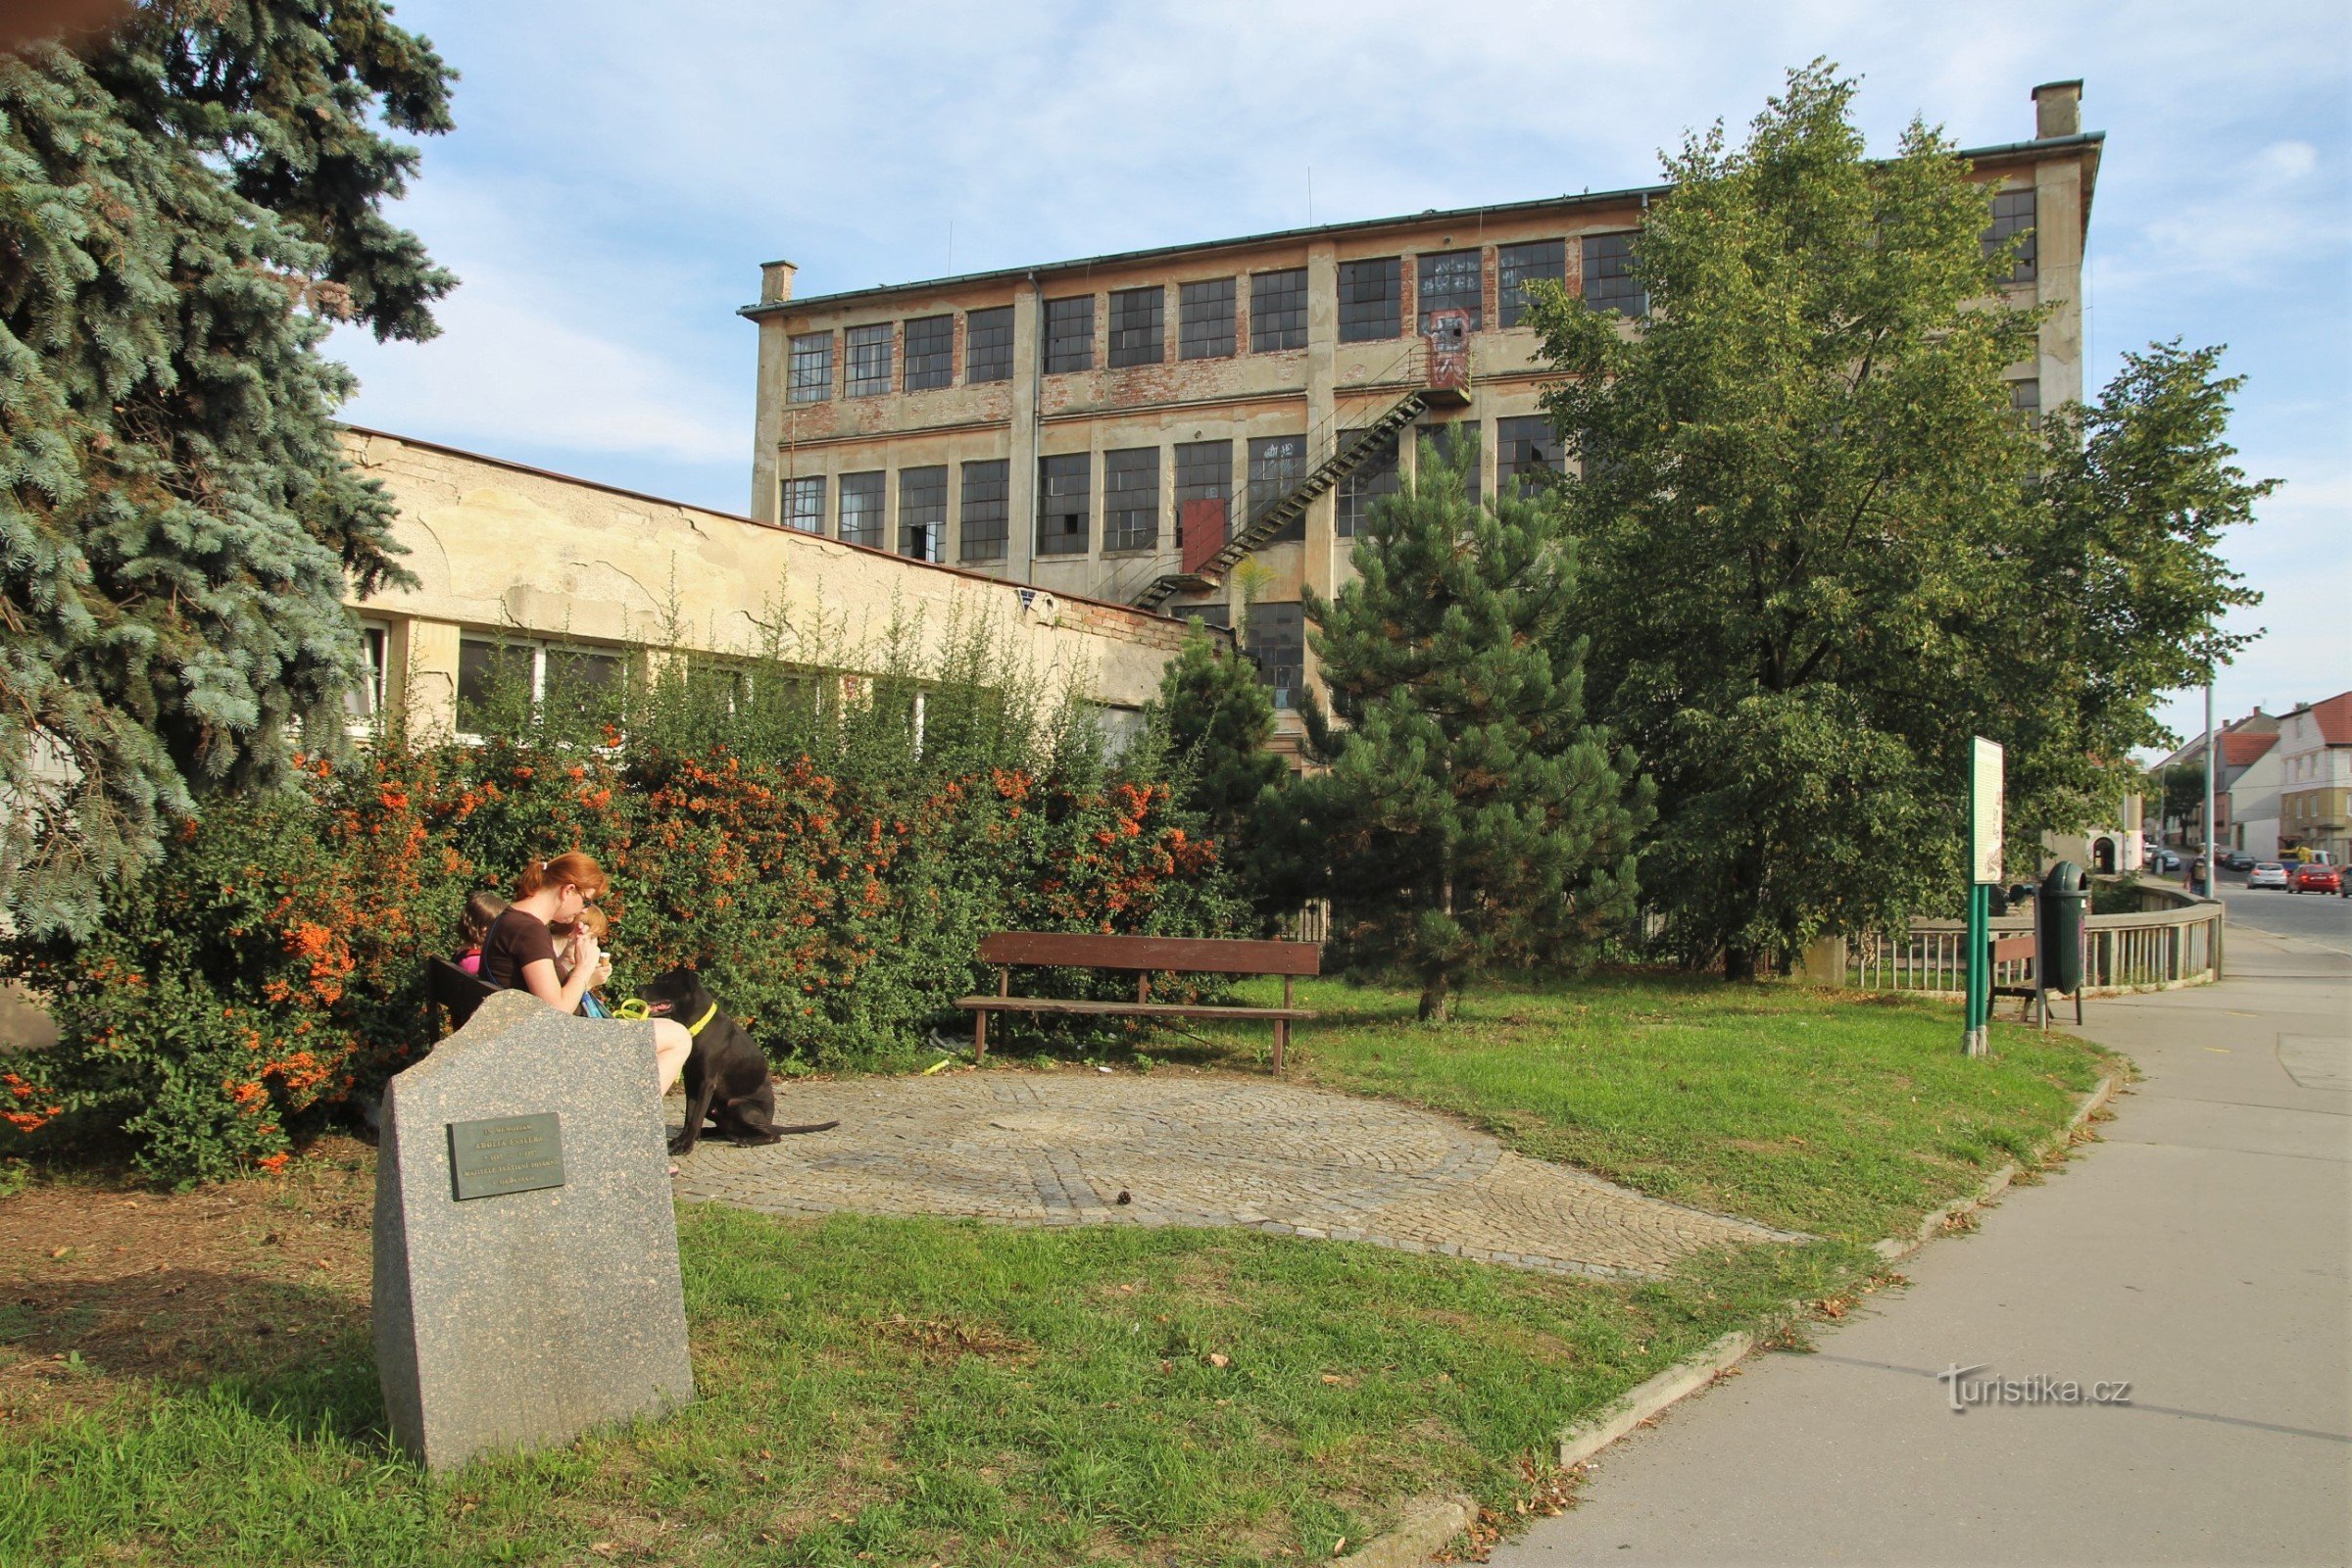 Spomenik Adolfu Esslerju, v ozadju zgradba tovarne Essler